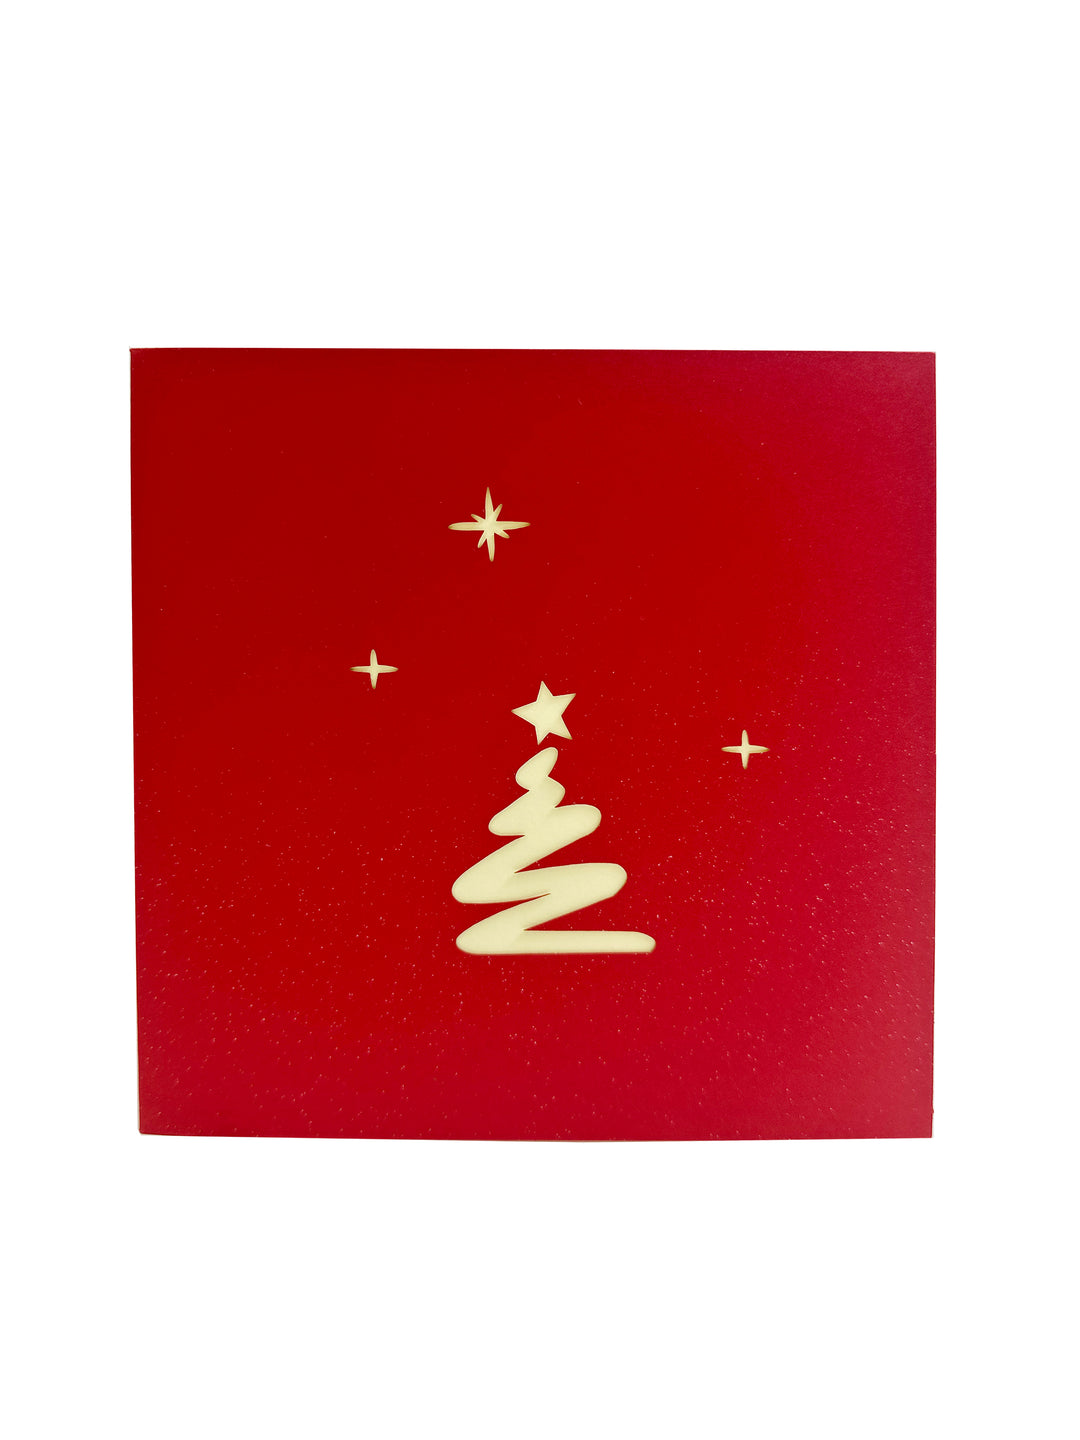 Pop-up Multi-Purpose Greeting Card( Christmas Tree)